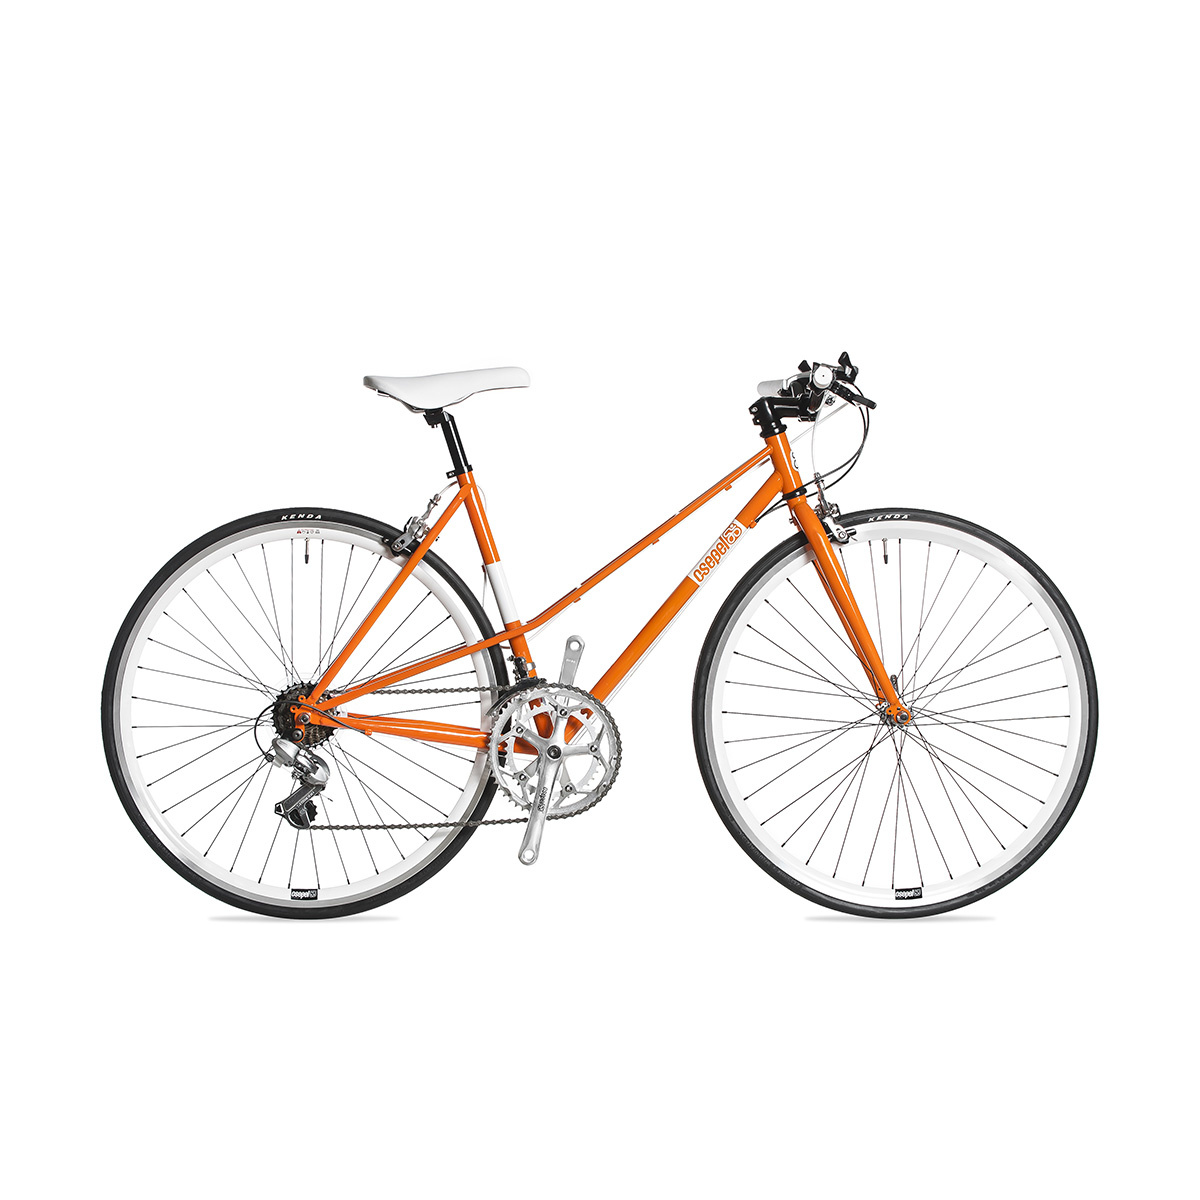 Felejtse el a megszokott fekete biztonsági zárat és dobja fel biciklijét neon színekkel! Az ára mondjuk borsos, 8500 forint a VeloVixen oldalán.